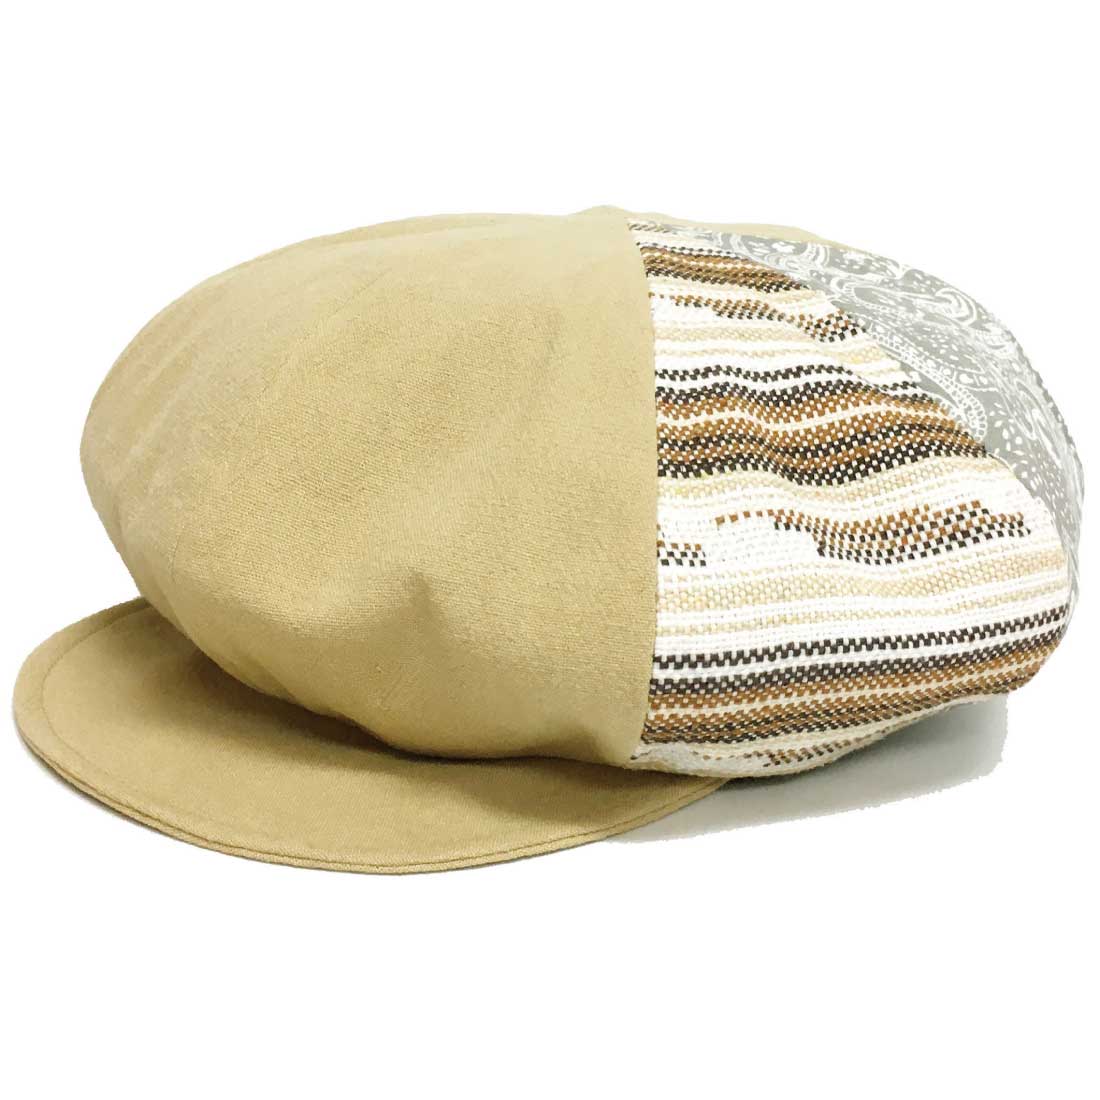 キャスケット 帽子 ゆったり 2way 大きい エスニック模様 58cm-62cm hat-1460...